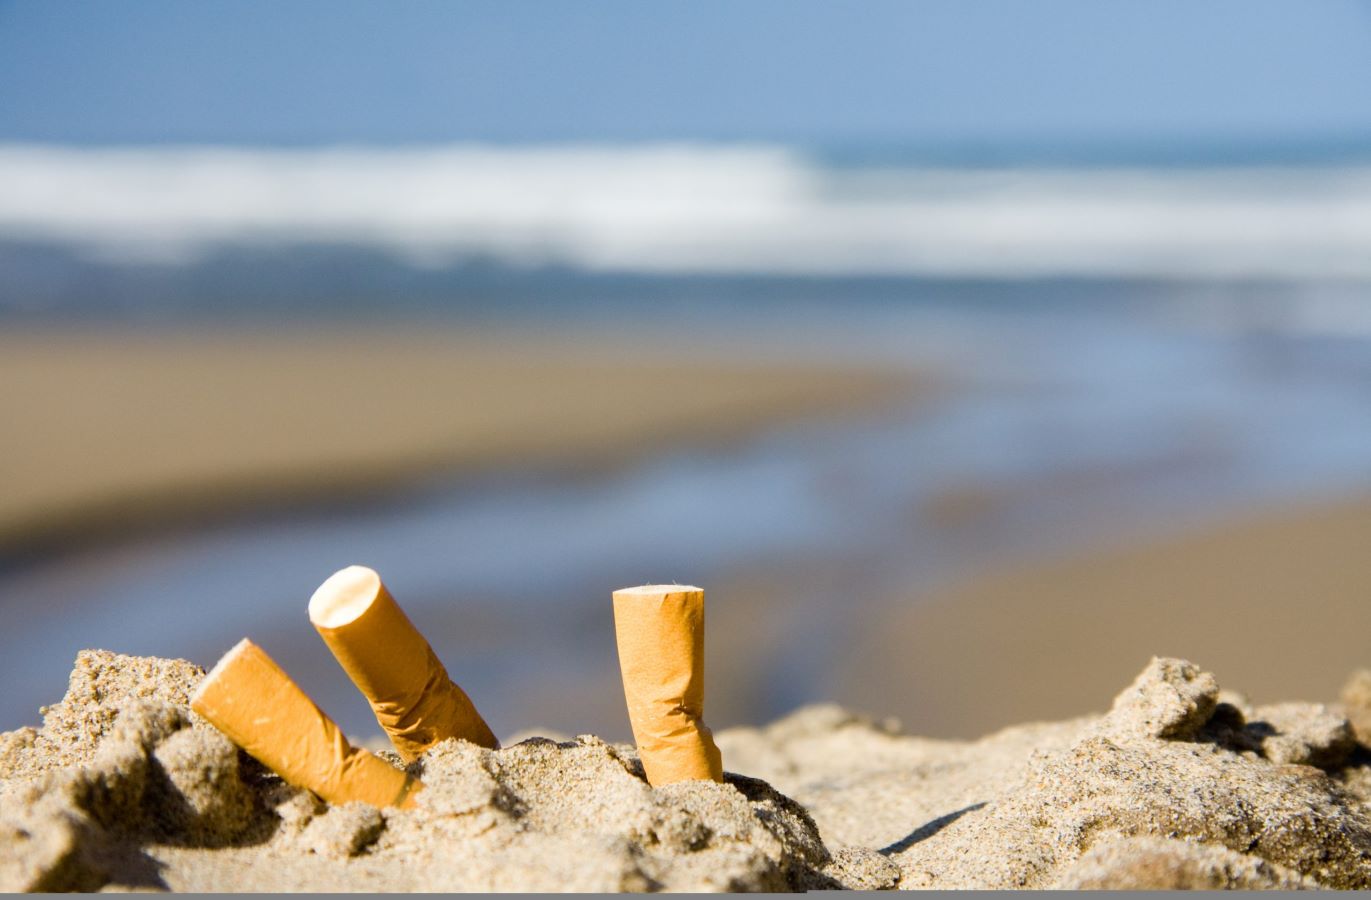 إلزام شركات التبغ في إسبانيا بتحمل تكاليف تنظيف أعقاب السجائر